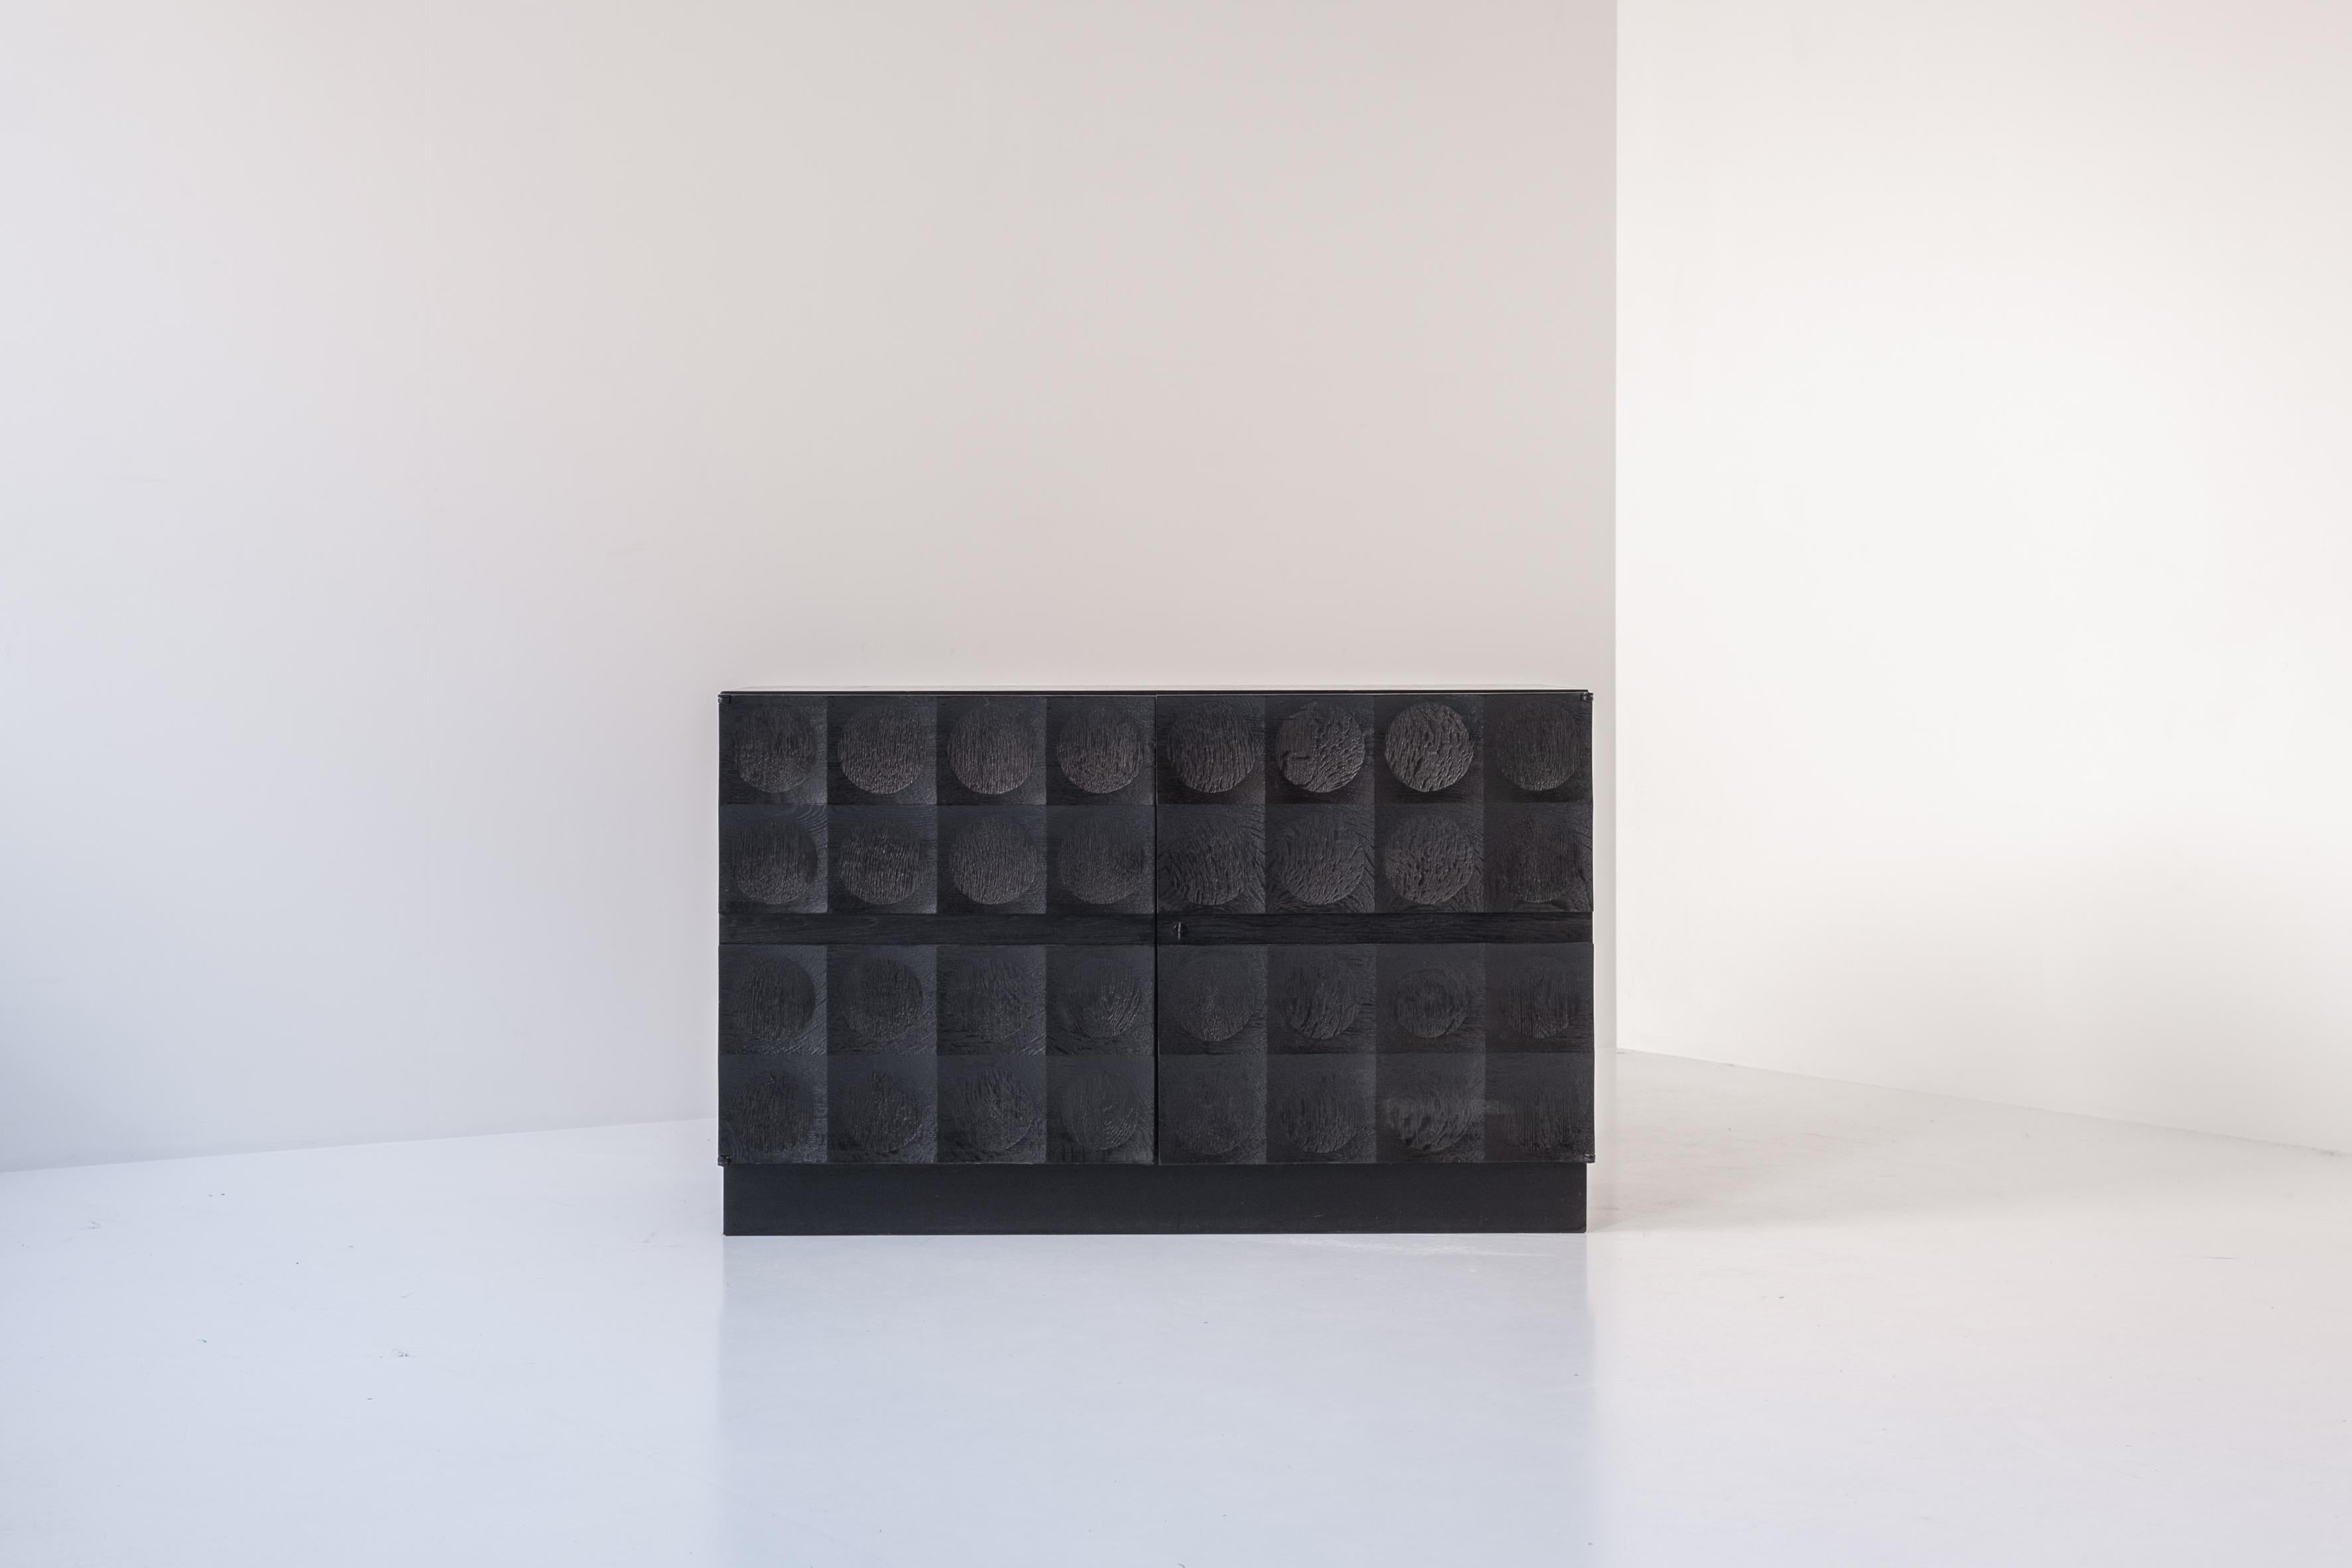 Armoire brutaliste en chêne teinté noir par J. Batenburg For MI, Belgique vers 1969. Ce meuble étonnant présente une série de motifs sculptés répétitifs, qui confèrent au buffet une apparence solide. Les deux portes couvrent un espace bar à gauche